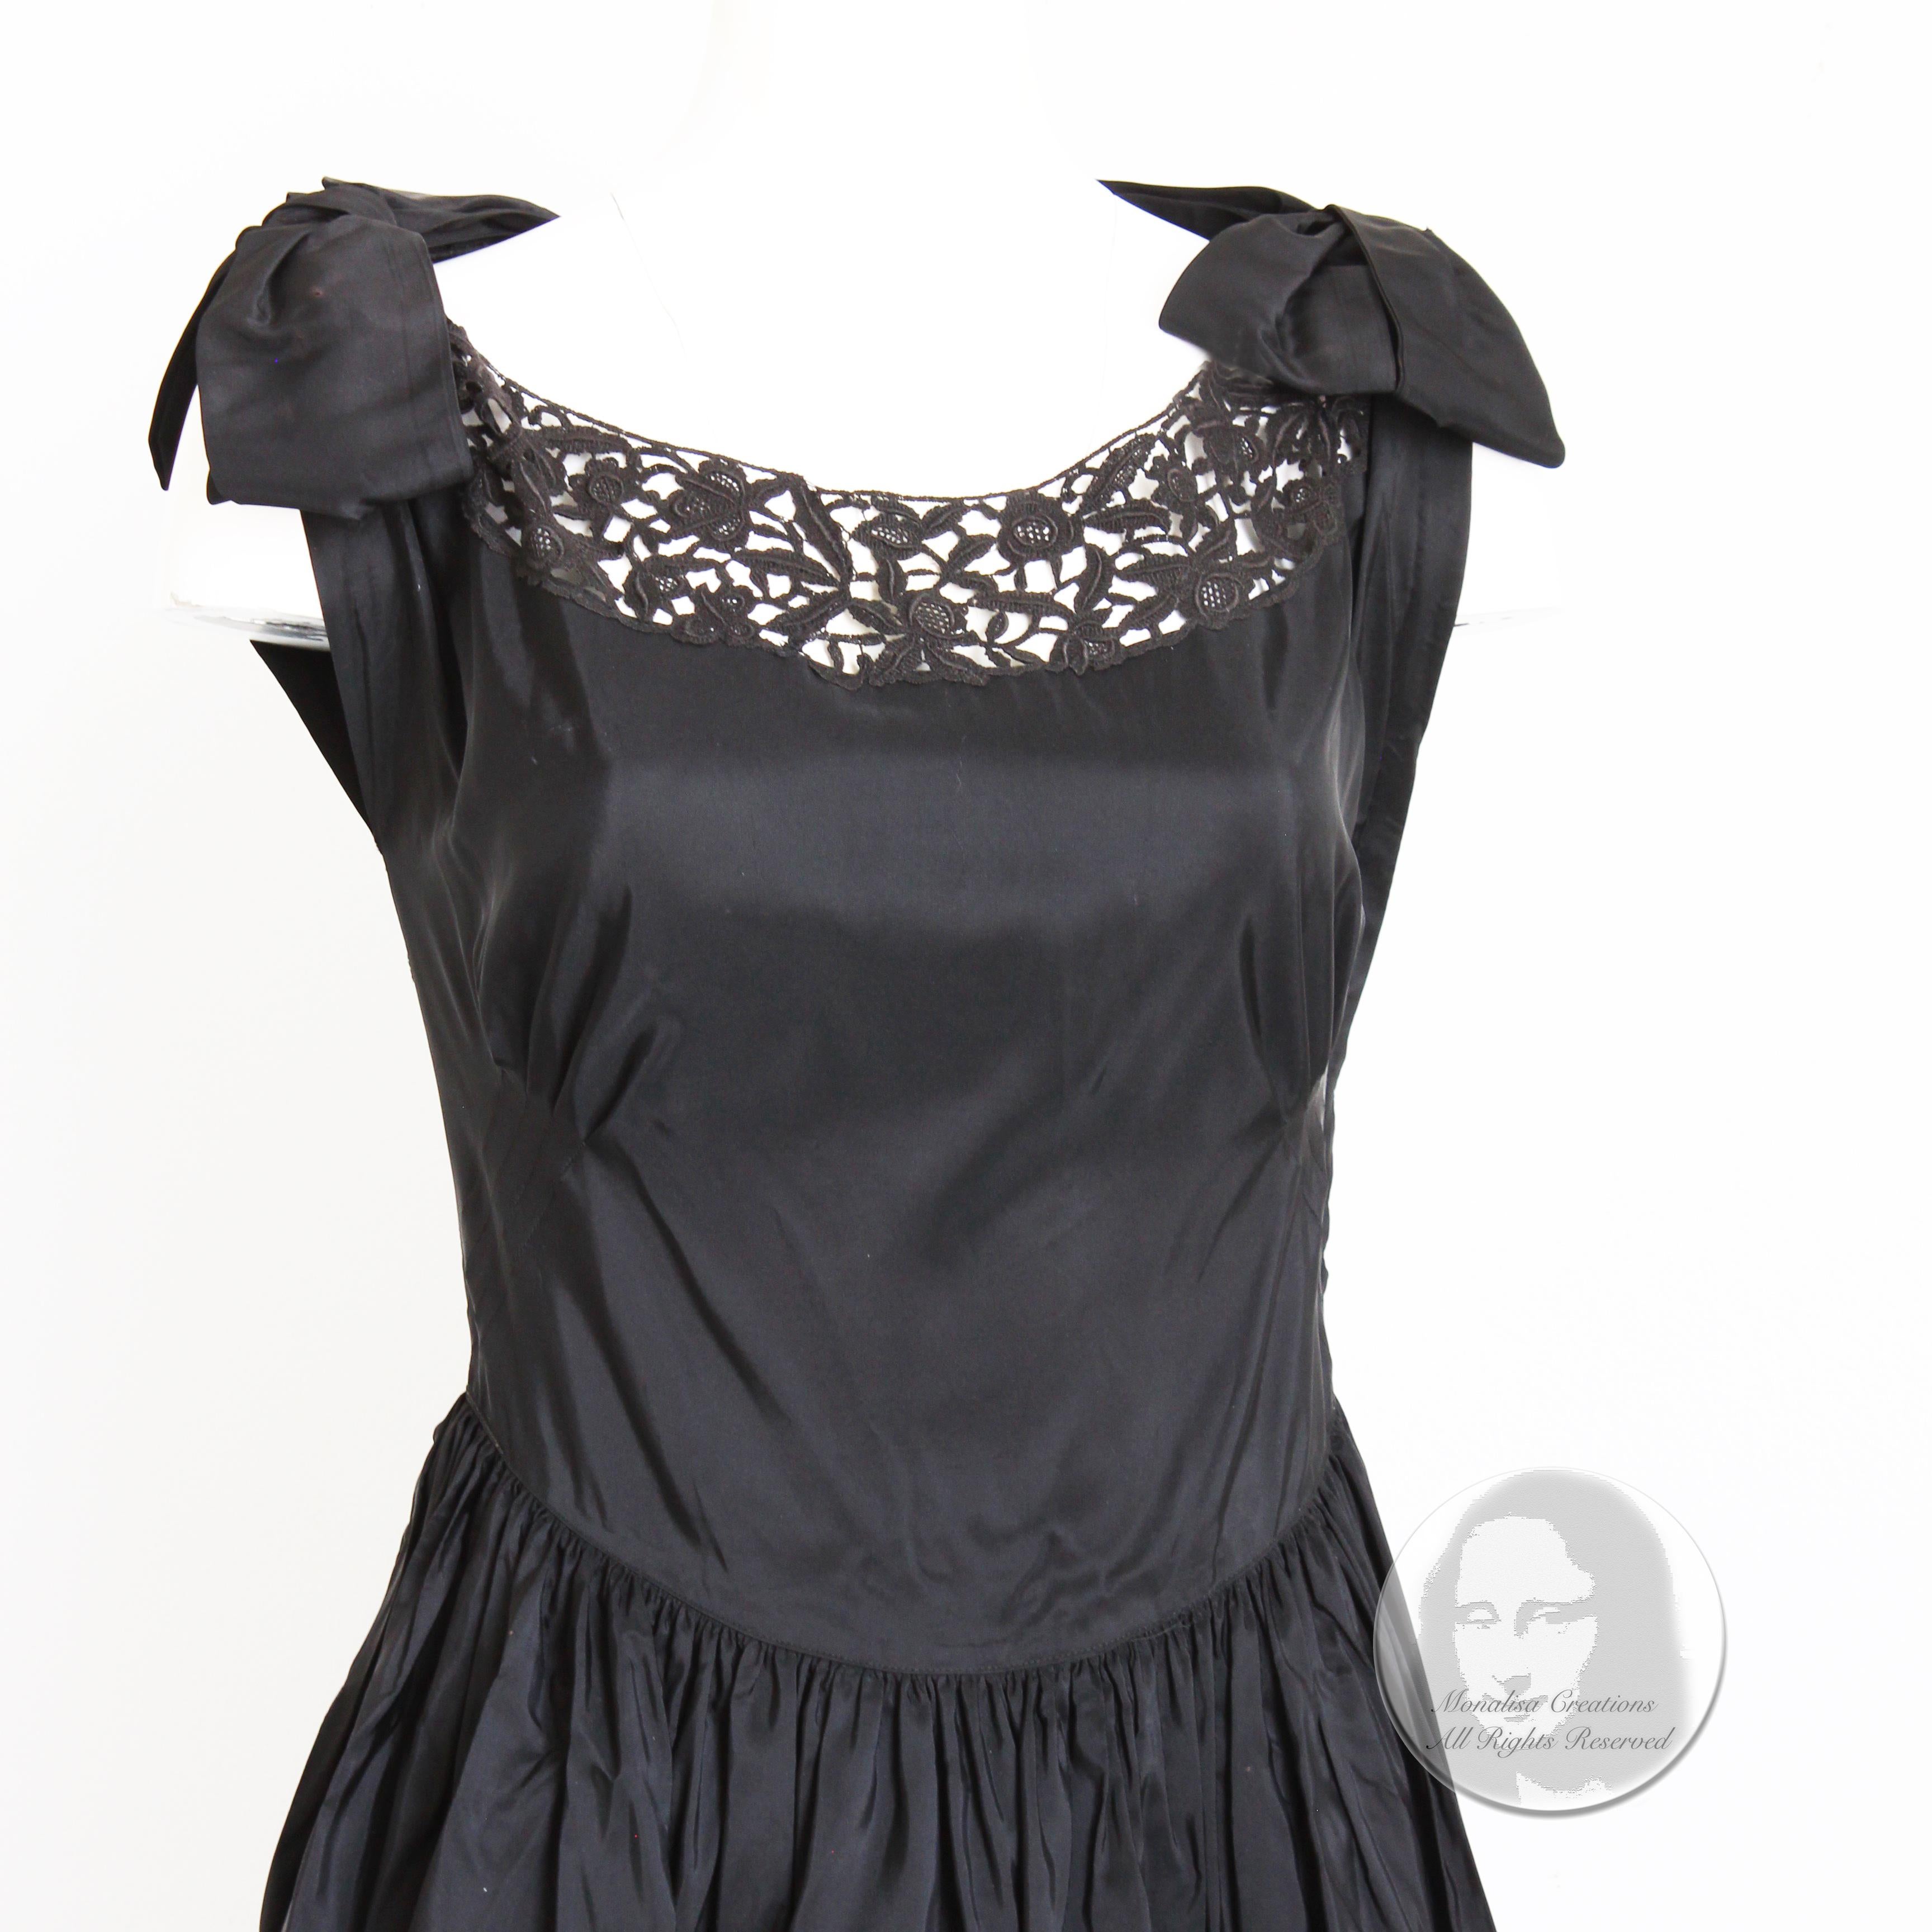 Fabuleuse robe de soirée vintage, probablement fabriquée à la fin des années 40 ou au début des années 50. Confectionnée en taffetas noir, elle présente un ourlet en dentelle festonnée noire et des empiècements en dentelle sur la poitrine et dans le